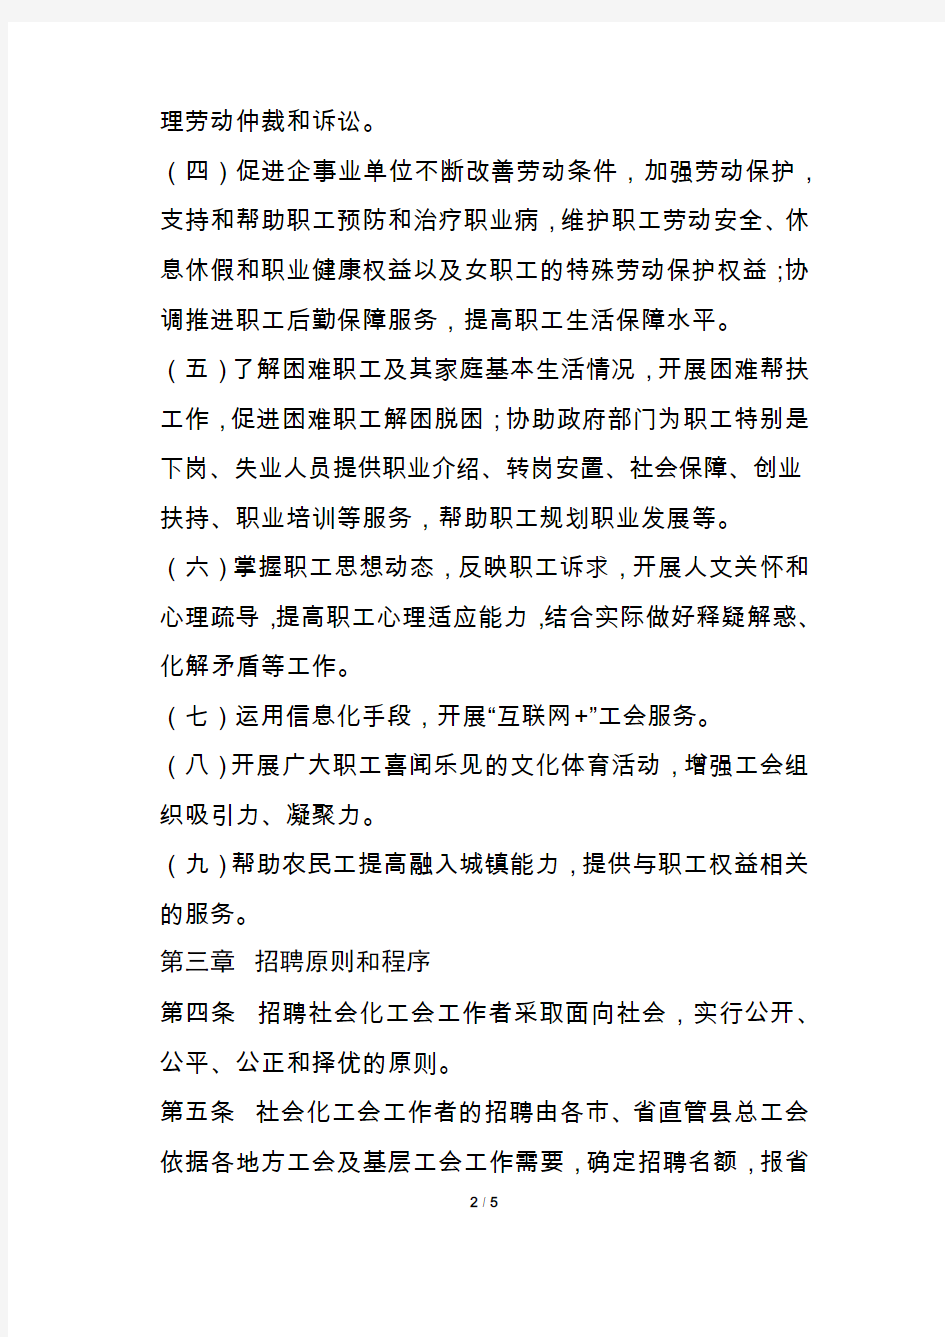 安徽省总工会直补社会化工会工作者管理办法(试行)-2018年